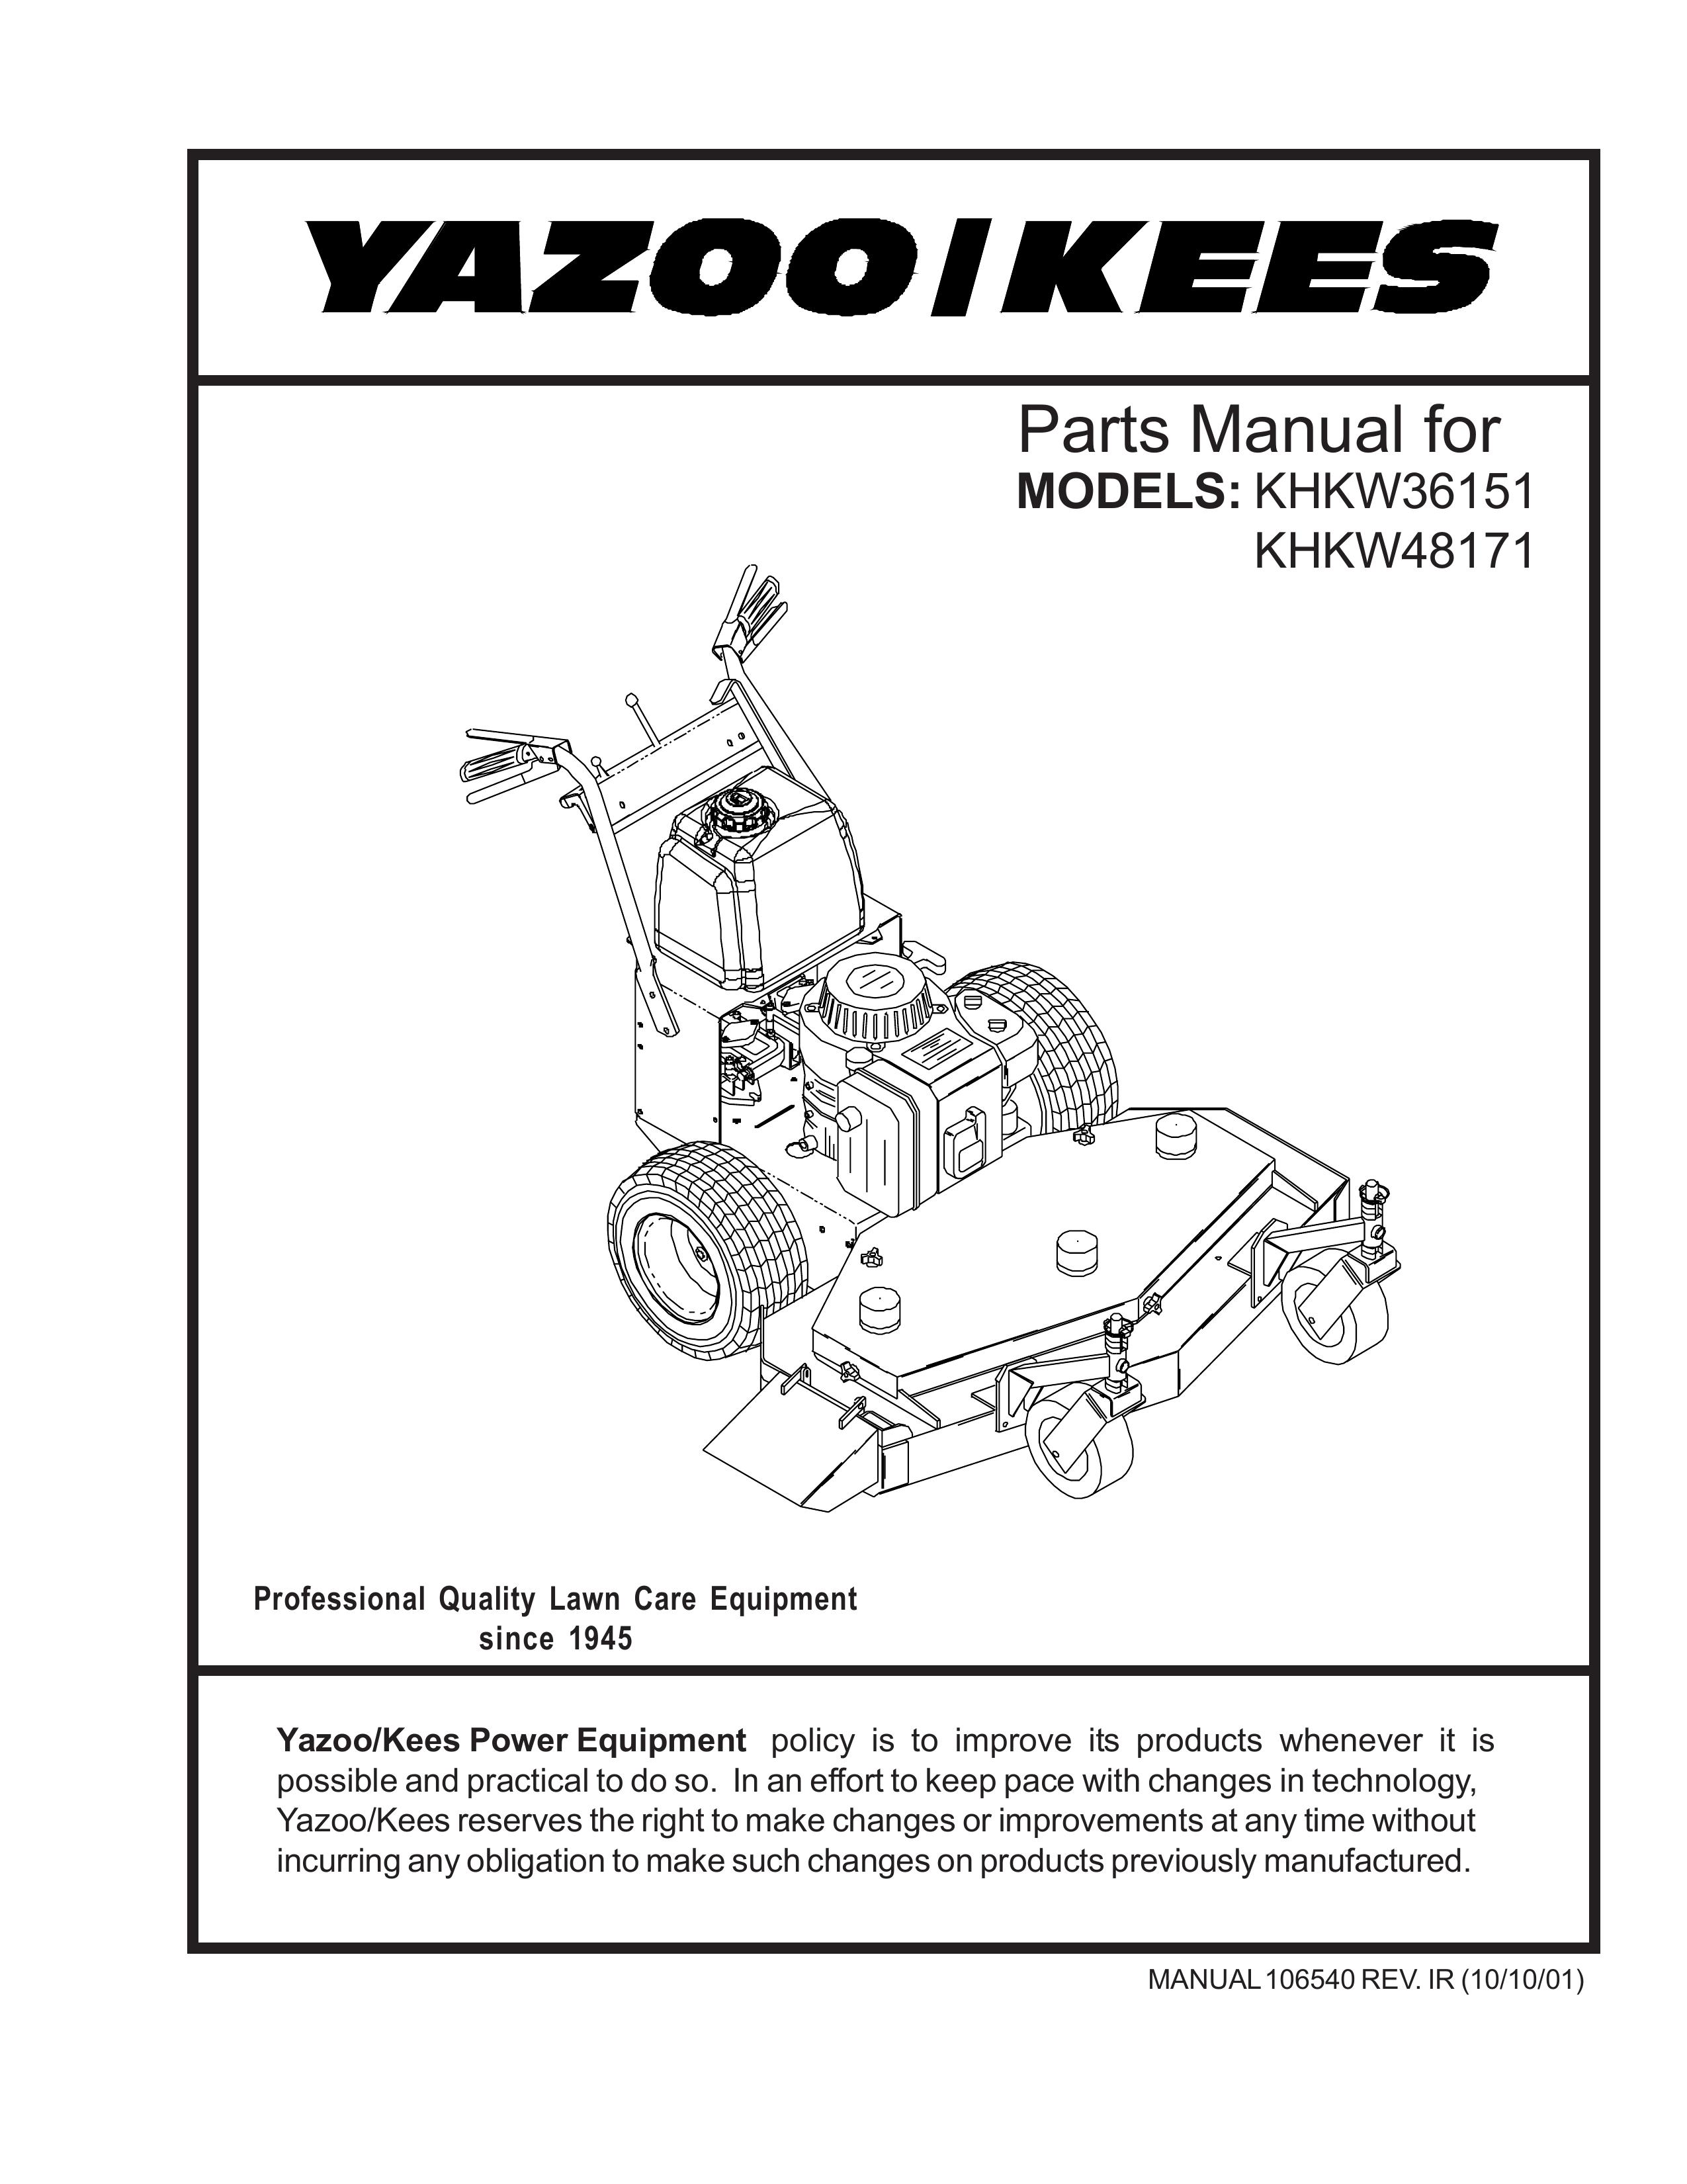 Yazoo/Kees KHKW48171 Lawn Mower User Manual